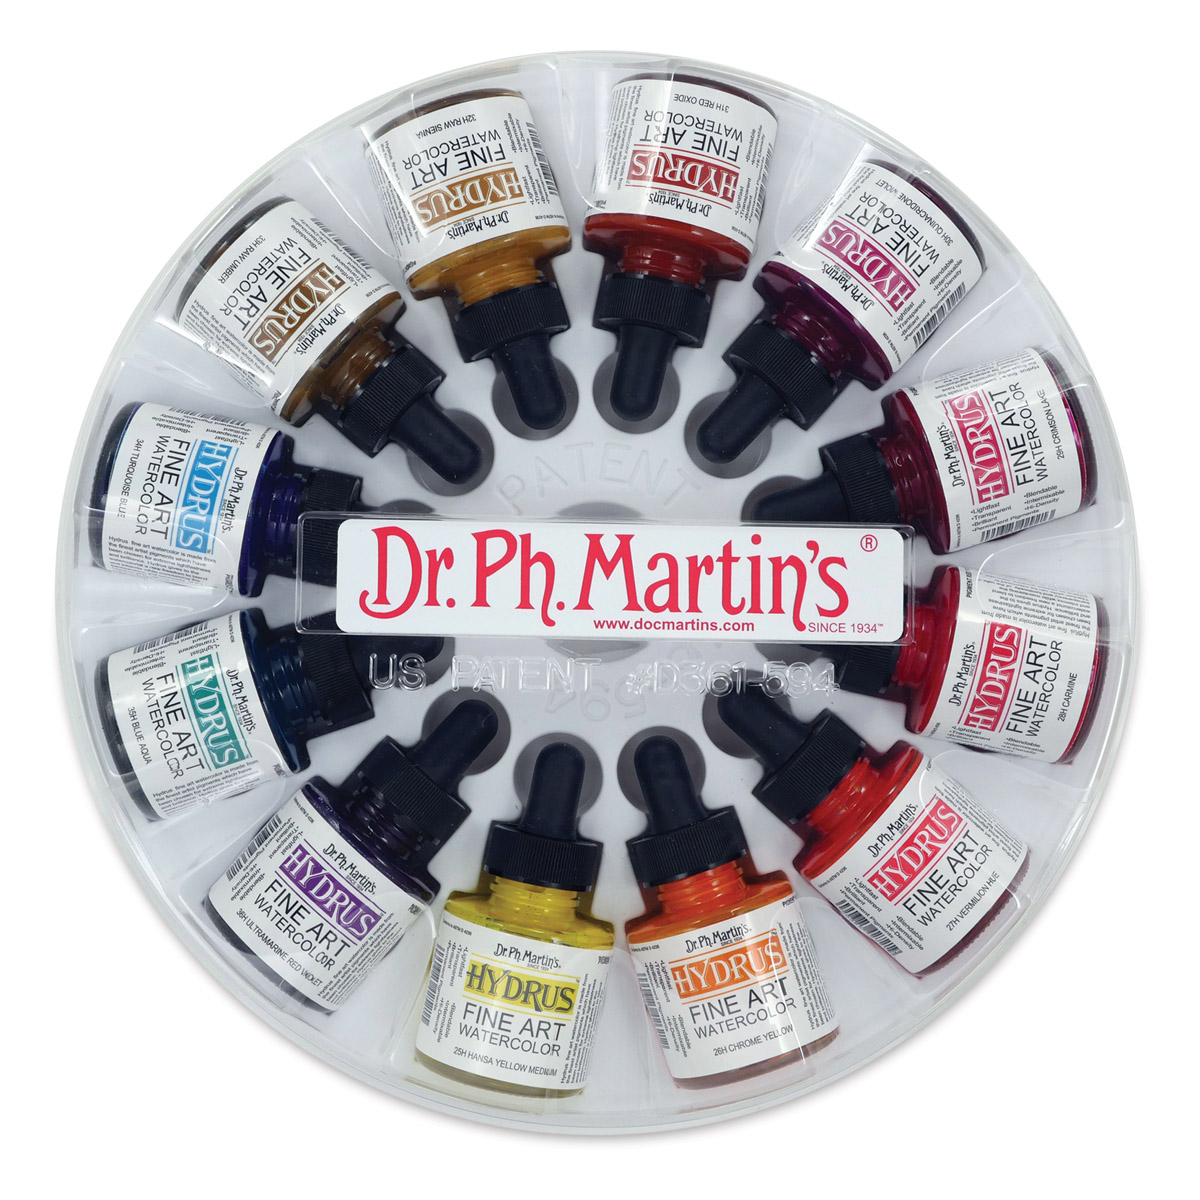 Dr. Ph. Martin's Hydrus Fine Art Liquid Watercolors | Blick Art Materials